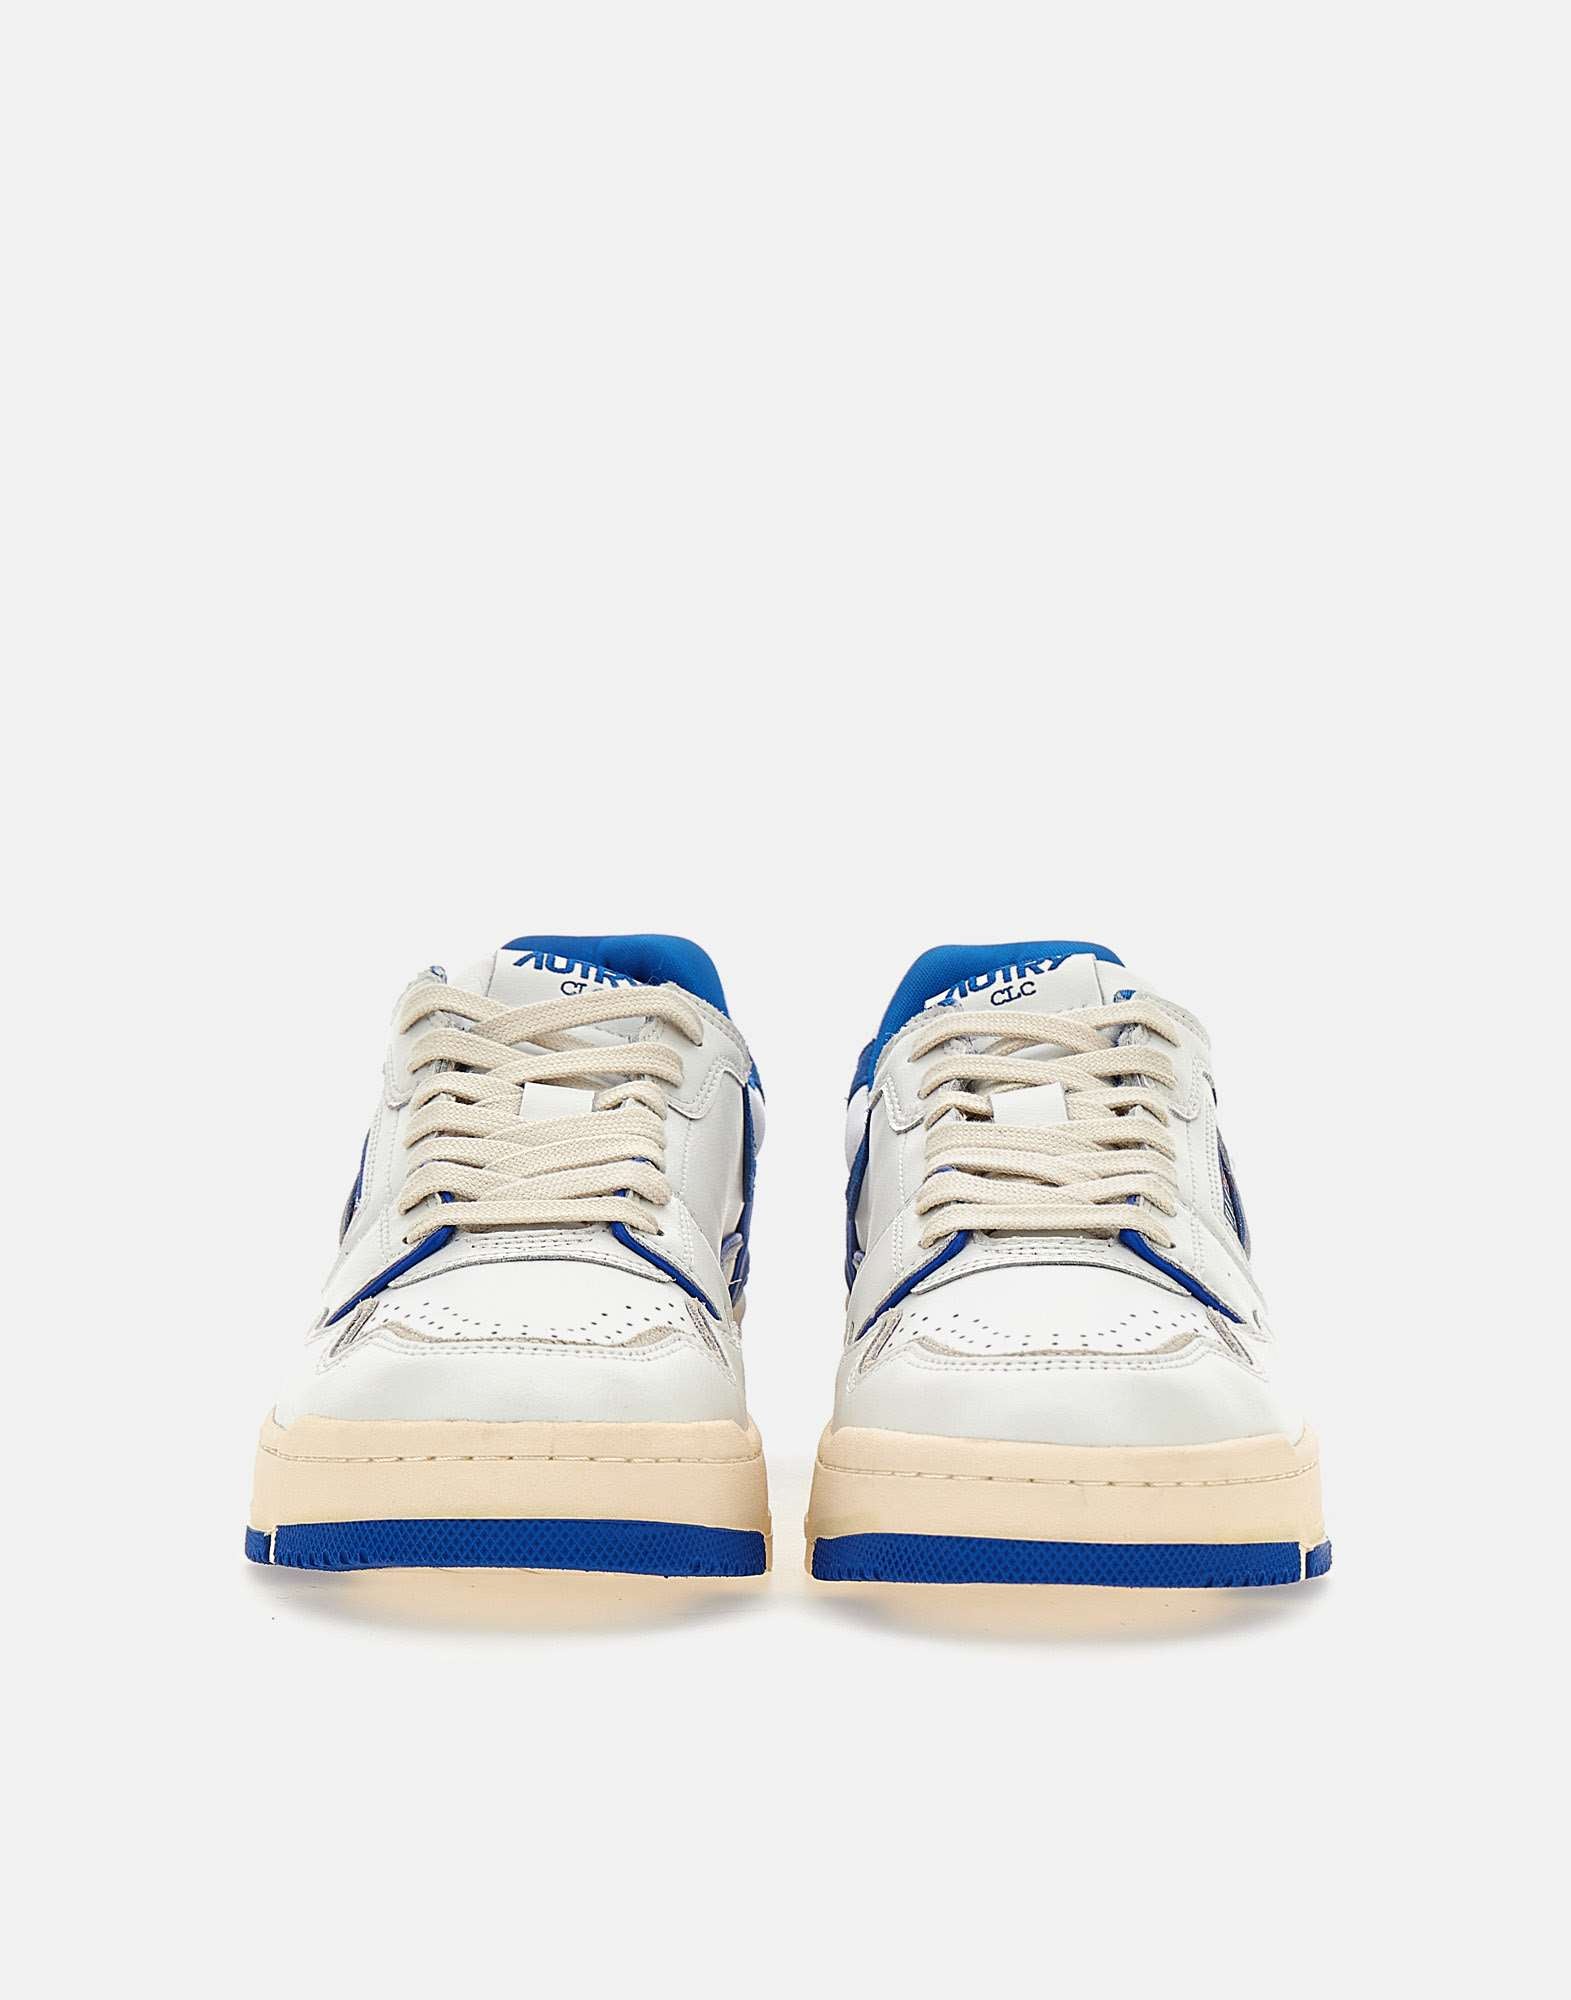 AUTRY ROLM Man WHITE-BLUE Sneakers - Zuklat